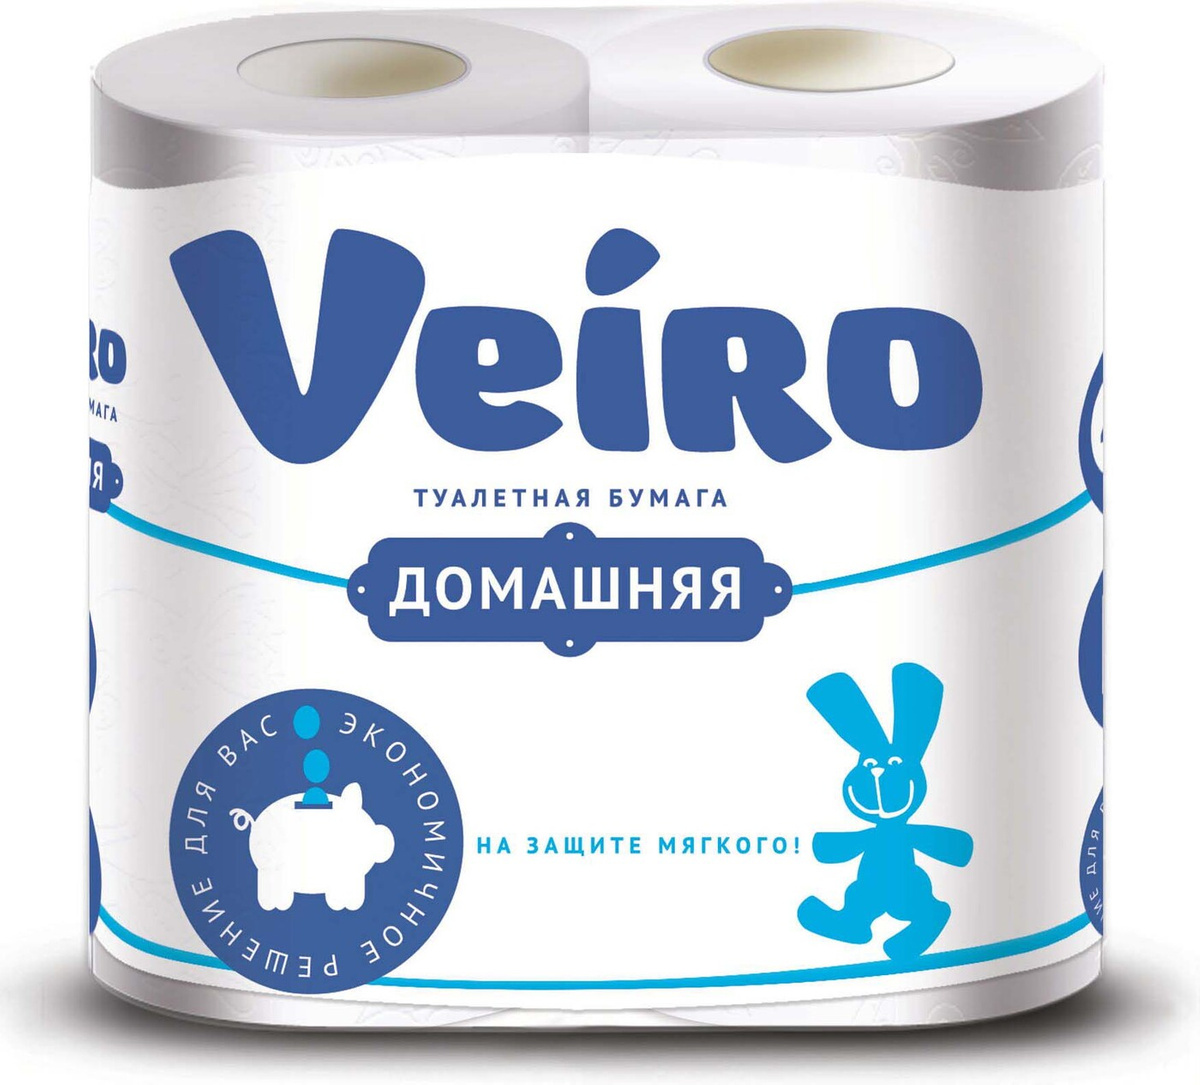 Купить Туалетная бумага Veiro Домашняя 2-ух слойная 4 шт